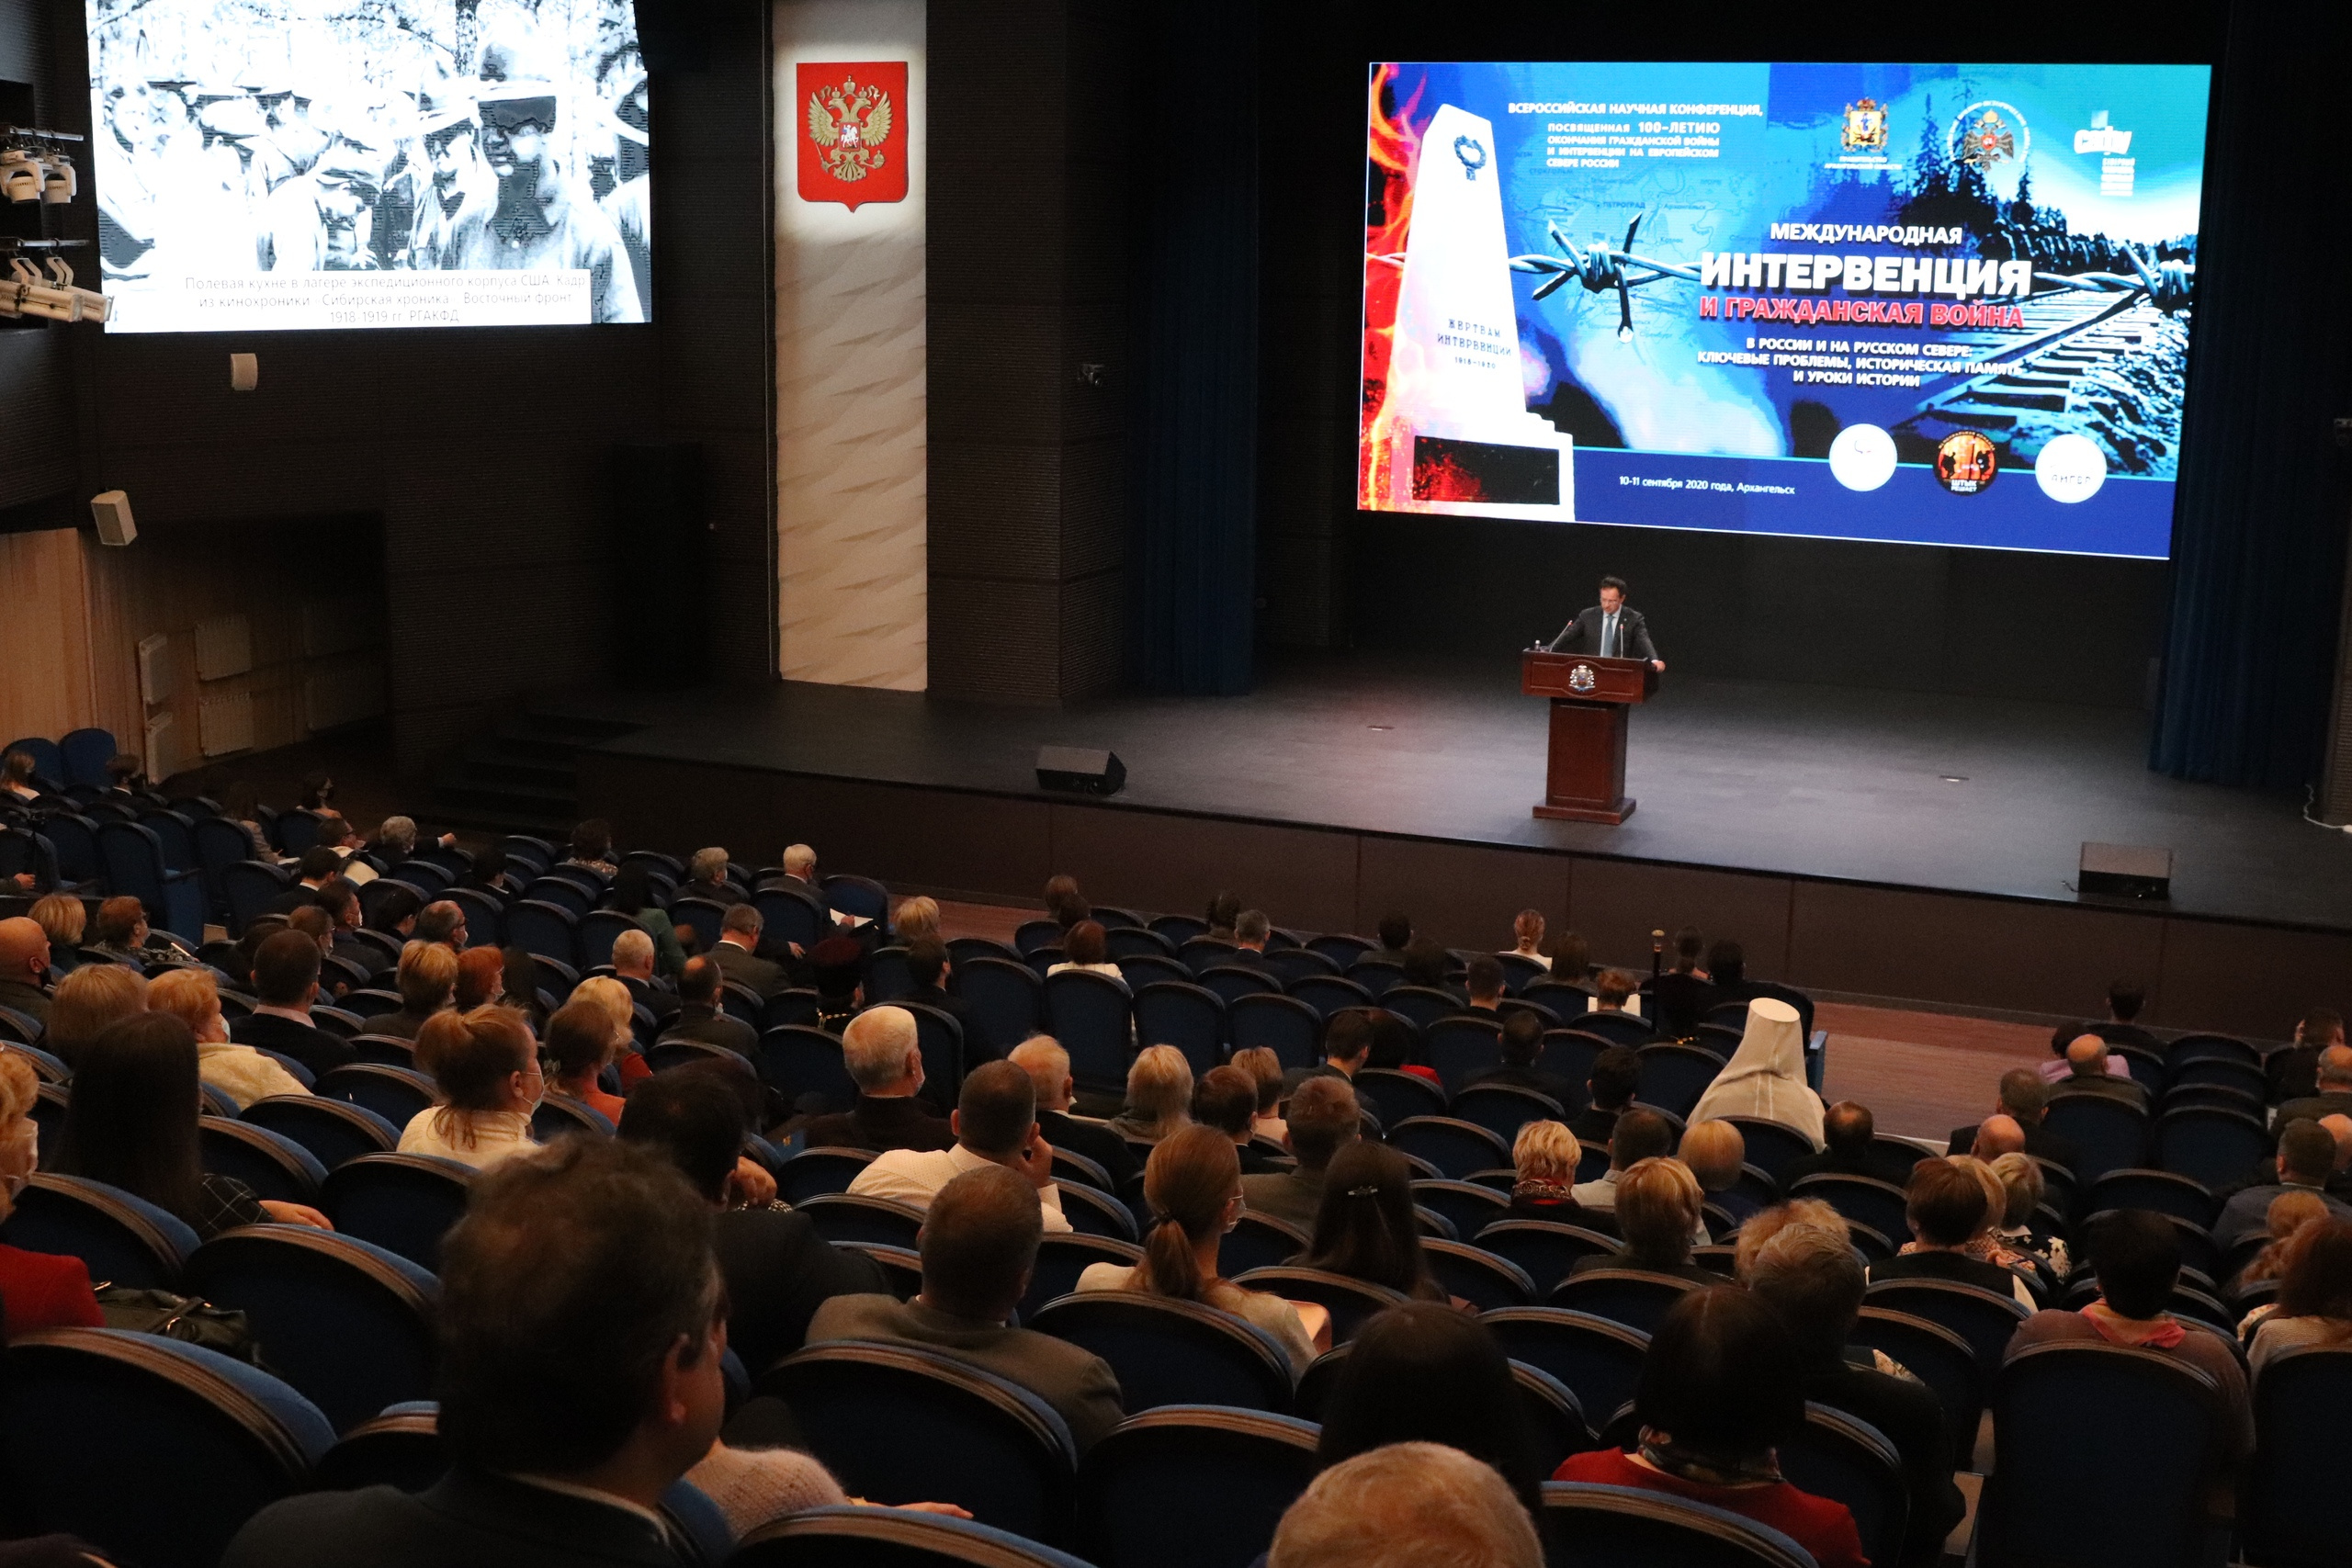 Мединский выступил на открытии конференции по истории в Архангельске